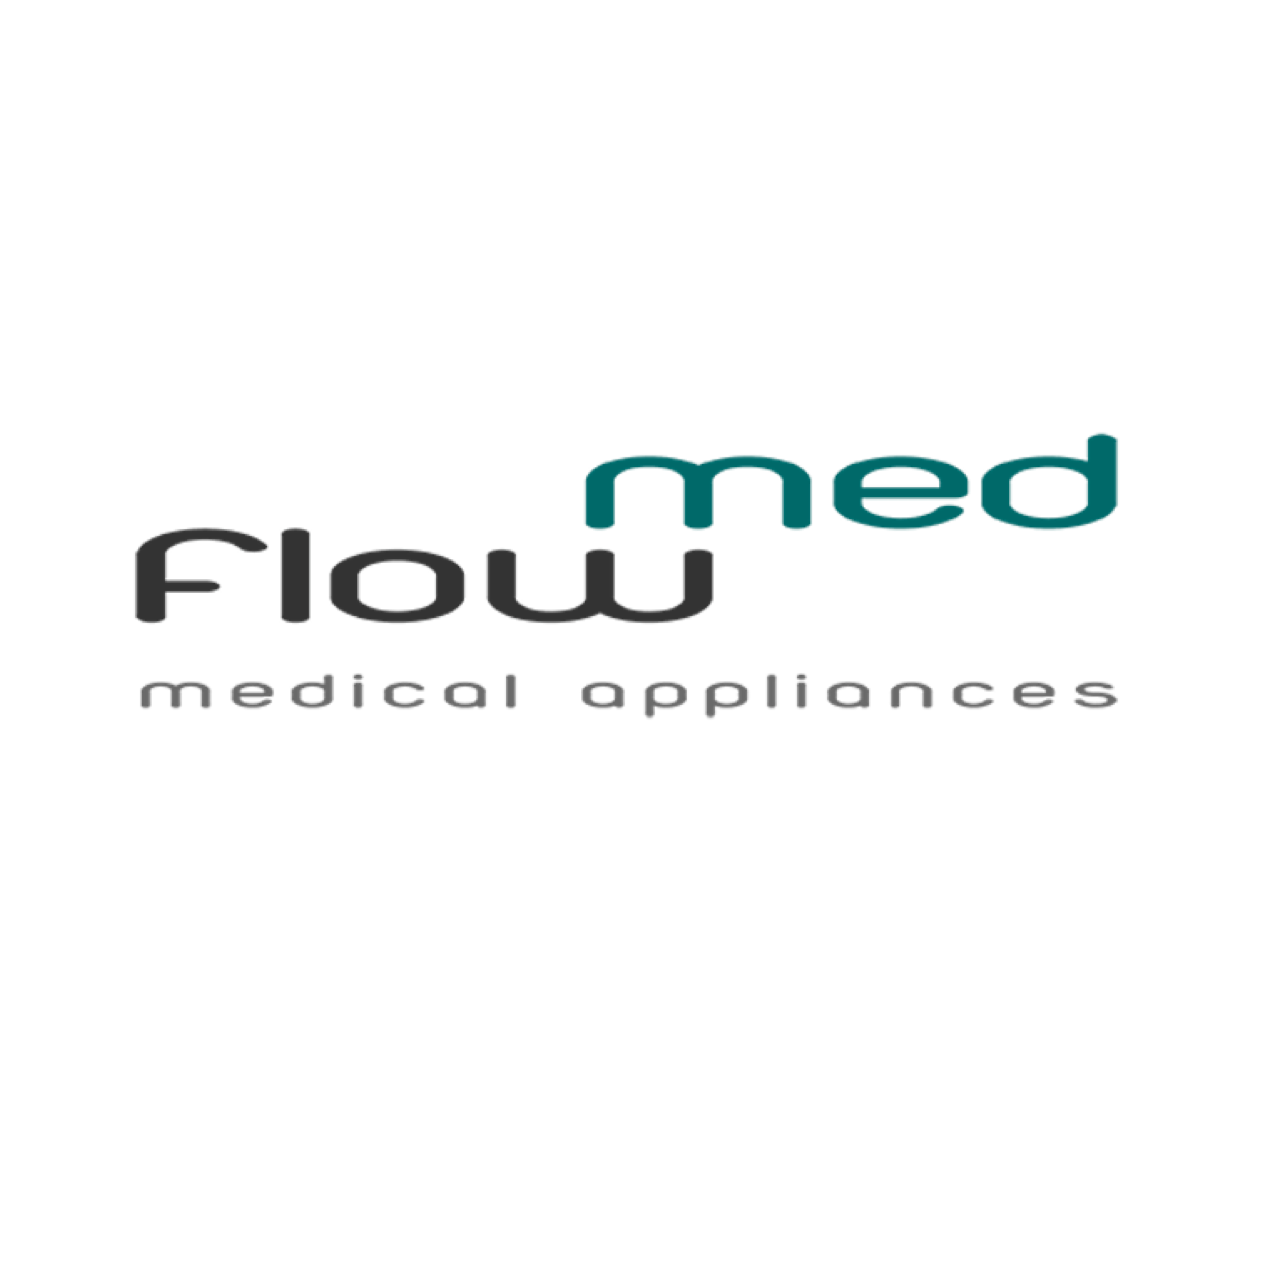 Mit Produkten von flow-med bieten wir innovative Produkte für die Medizinpflege an